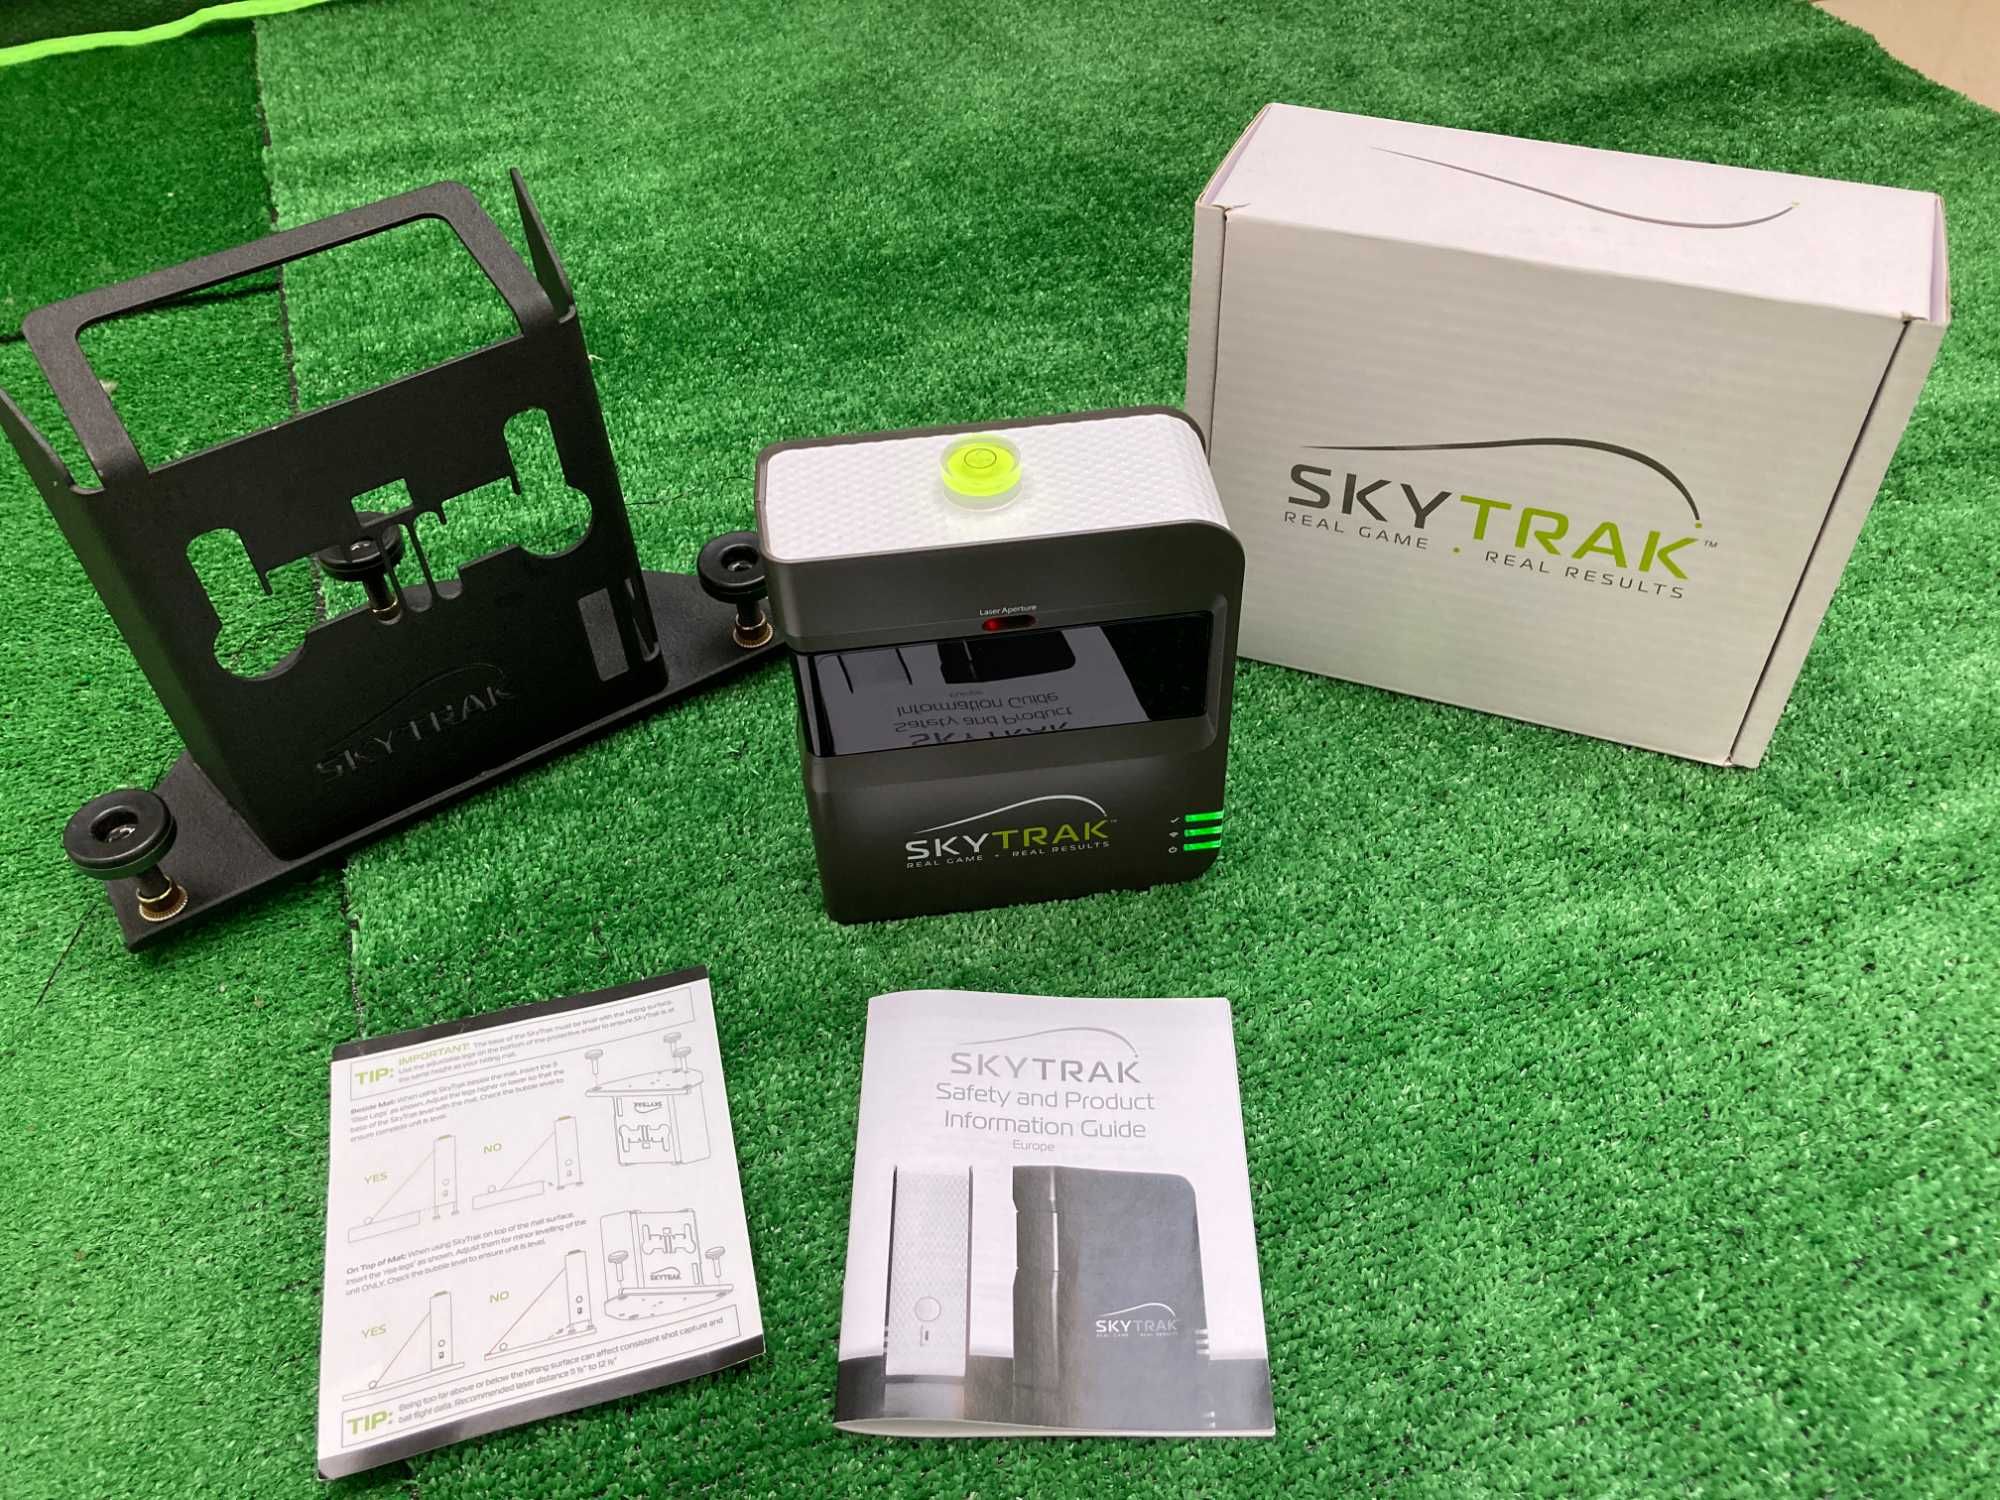 Simulador Golf completo com Skytrak como novo